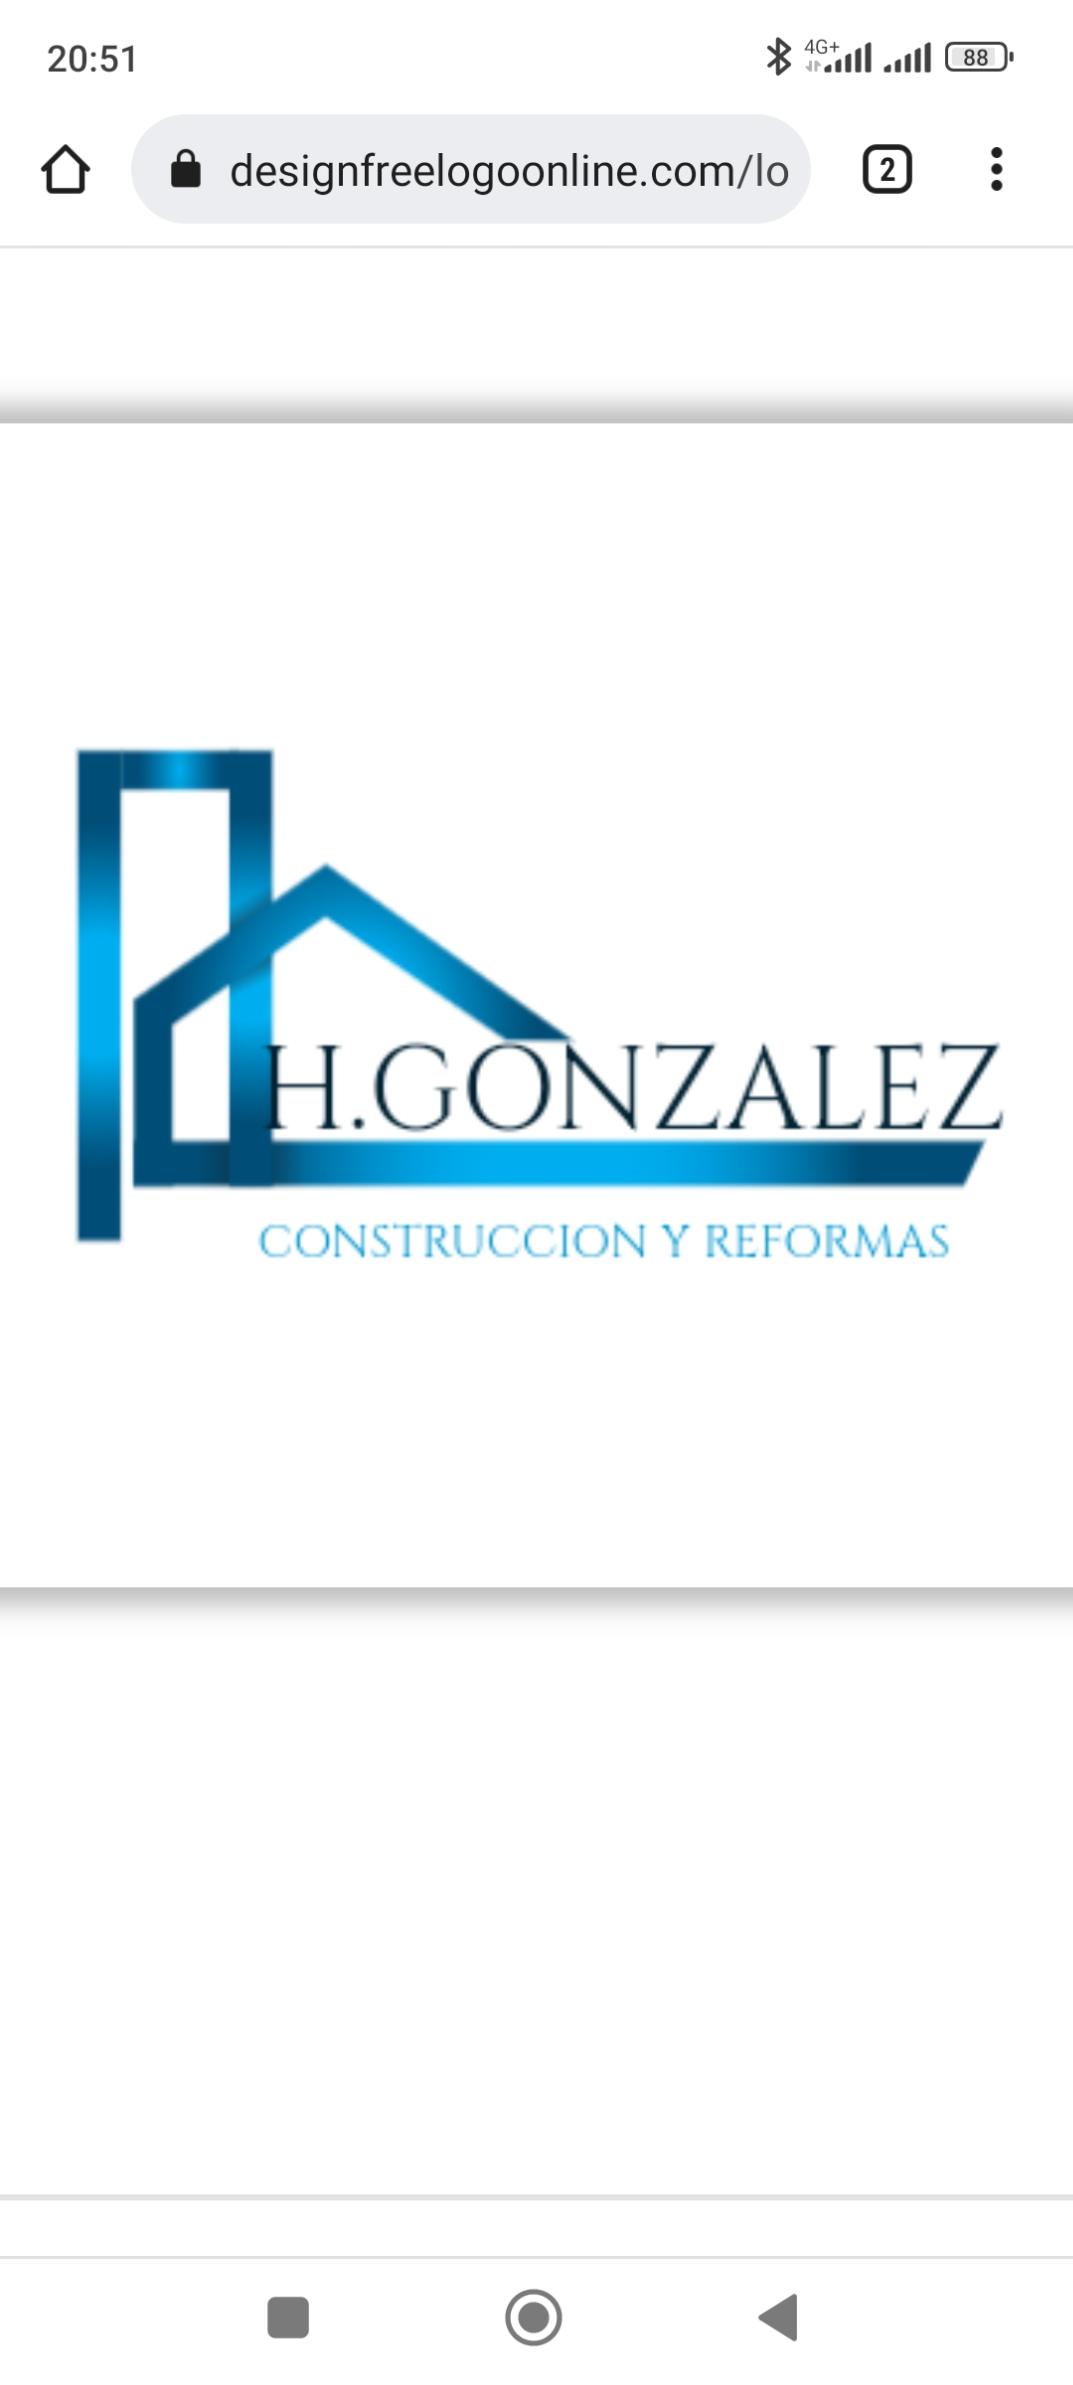 H. GONZALEZ